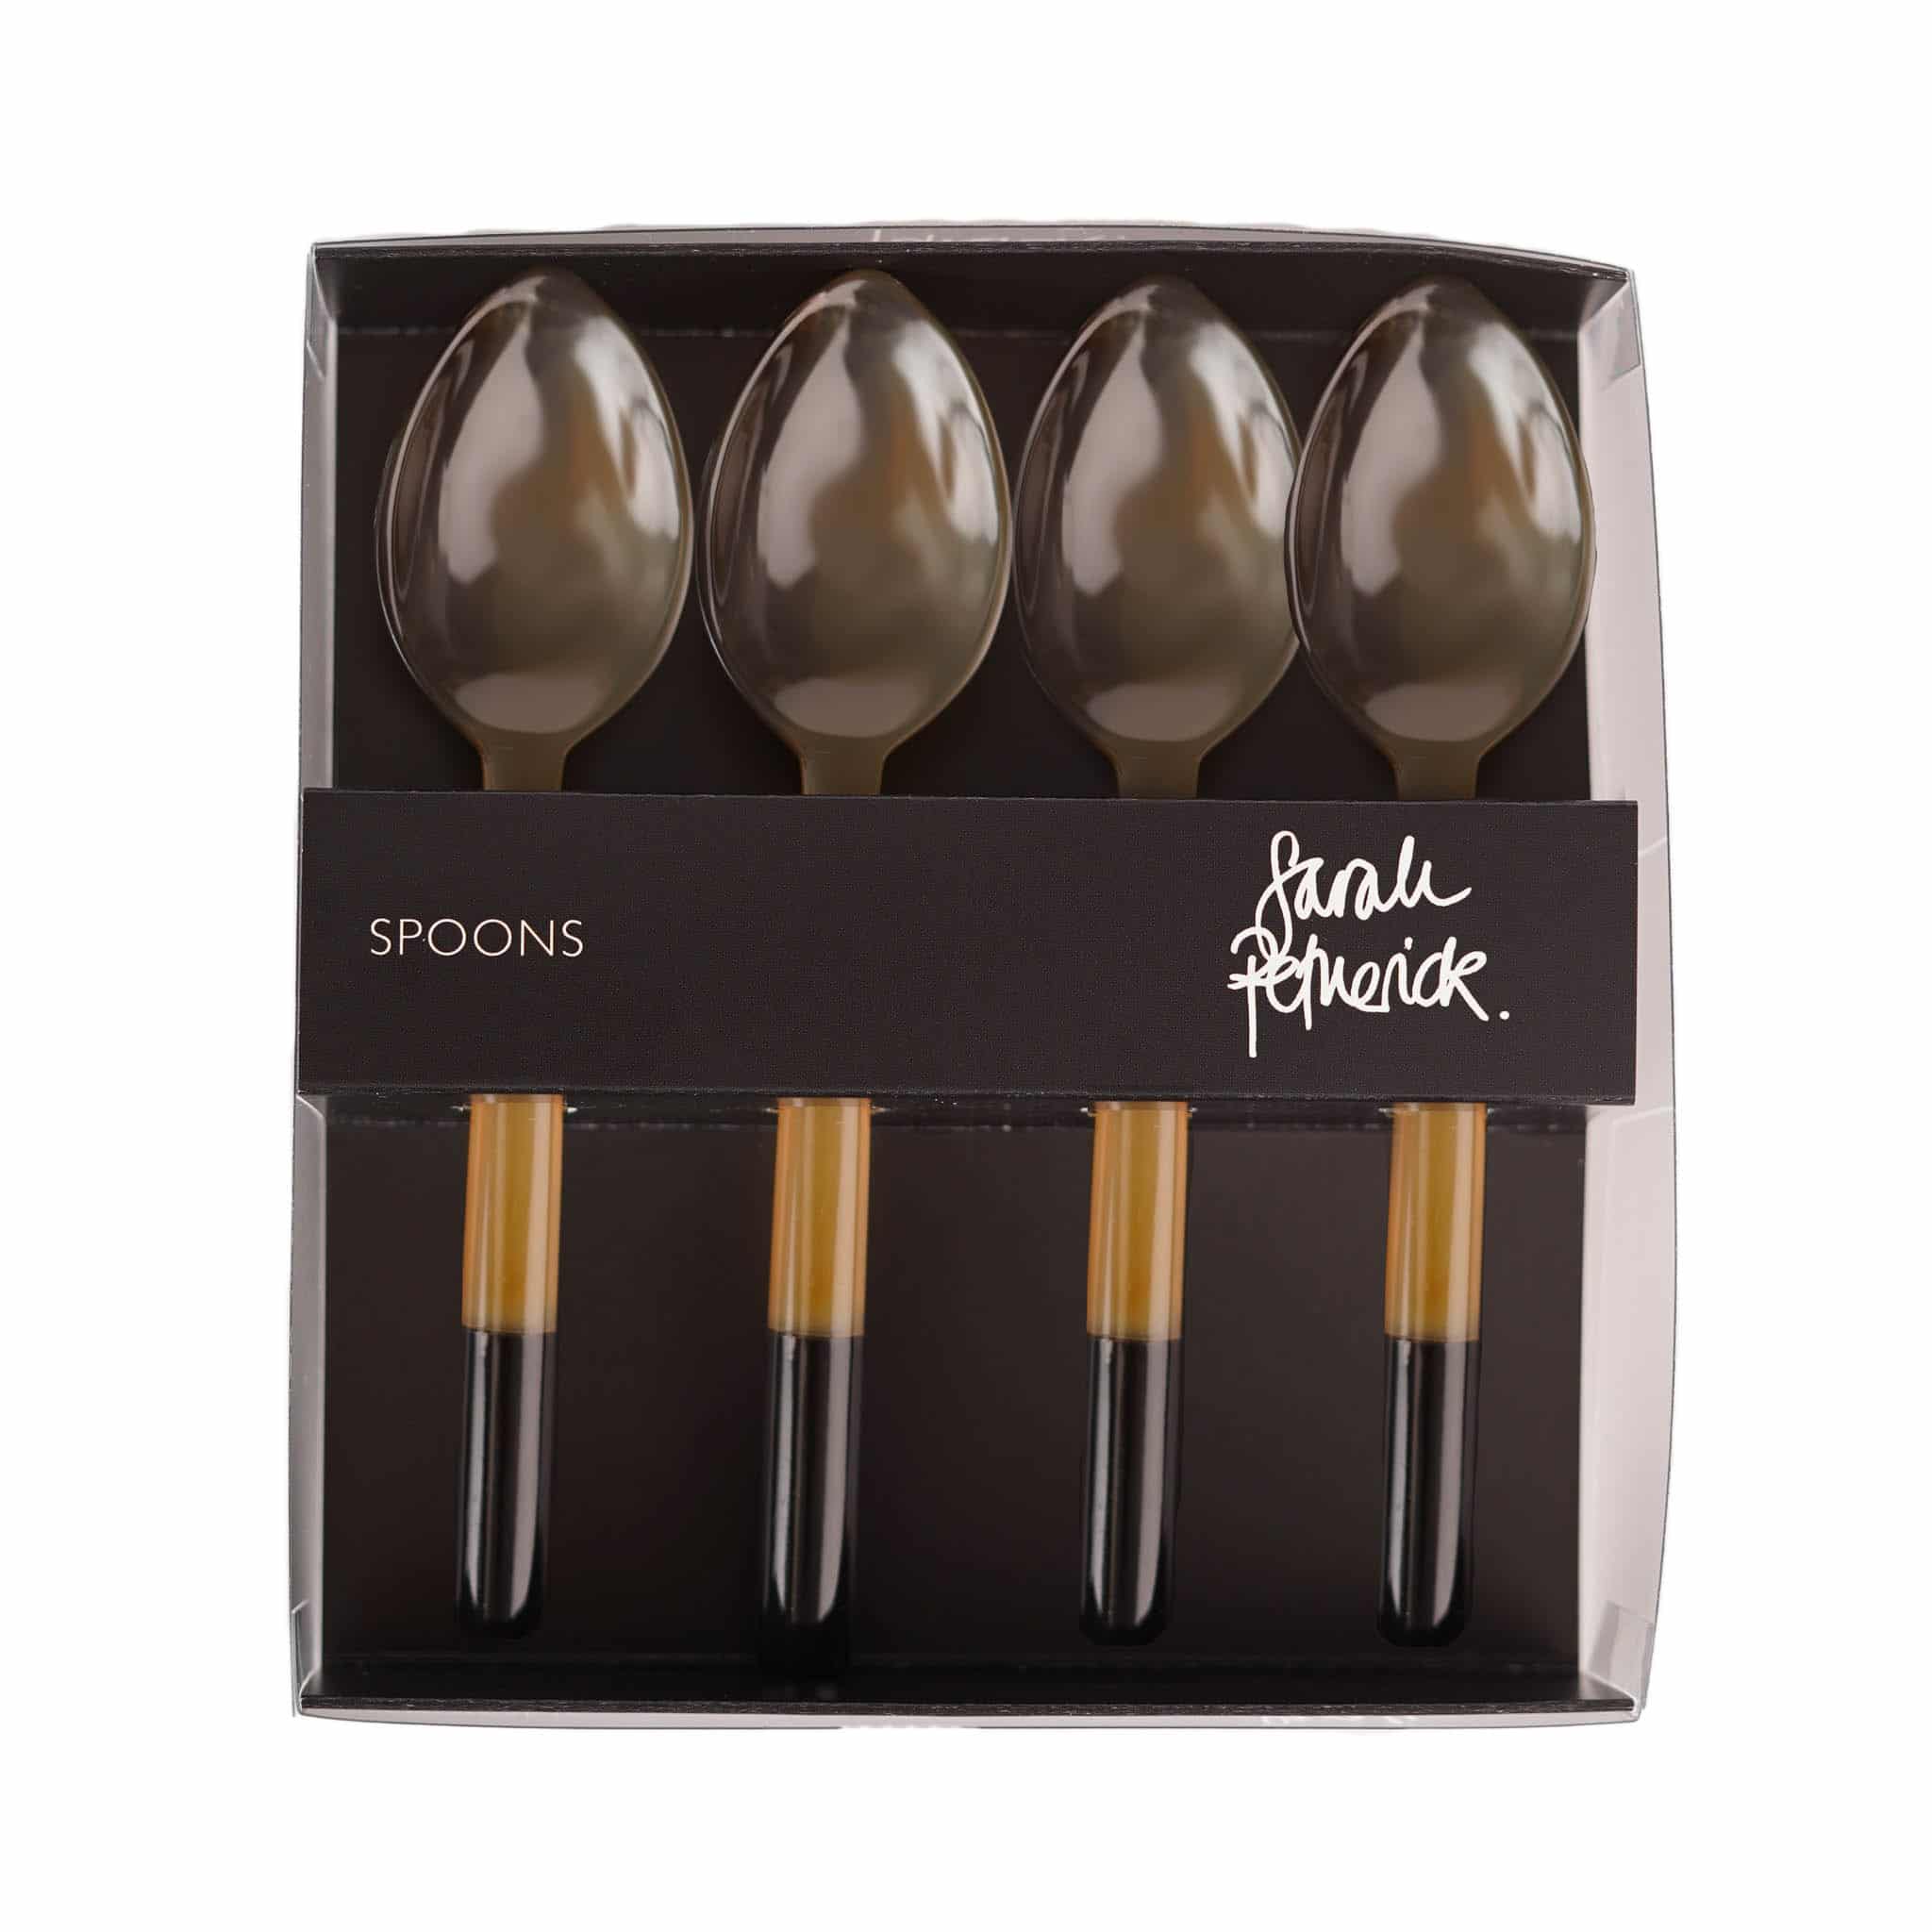 Sarah Petherick Light Horn Egg Spoons, Set of 4